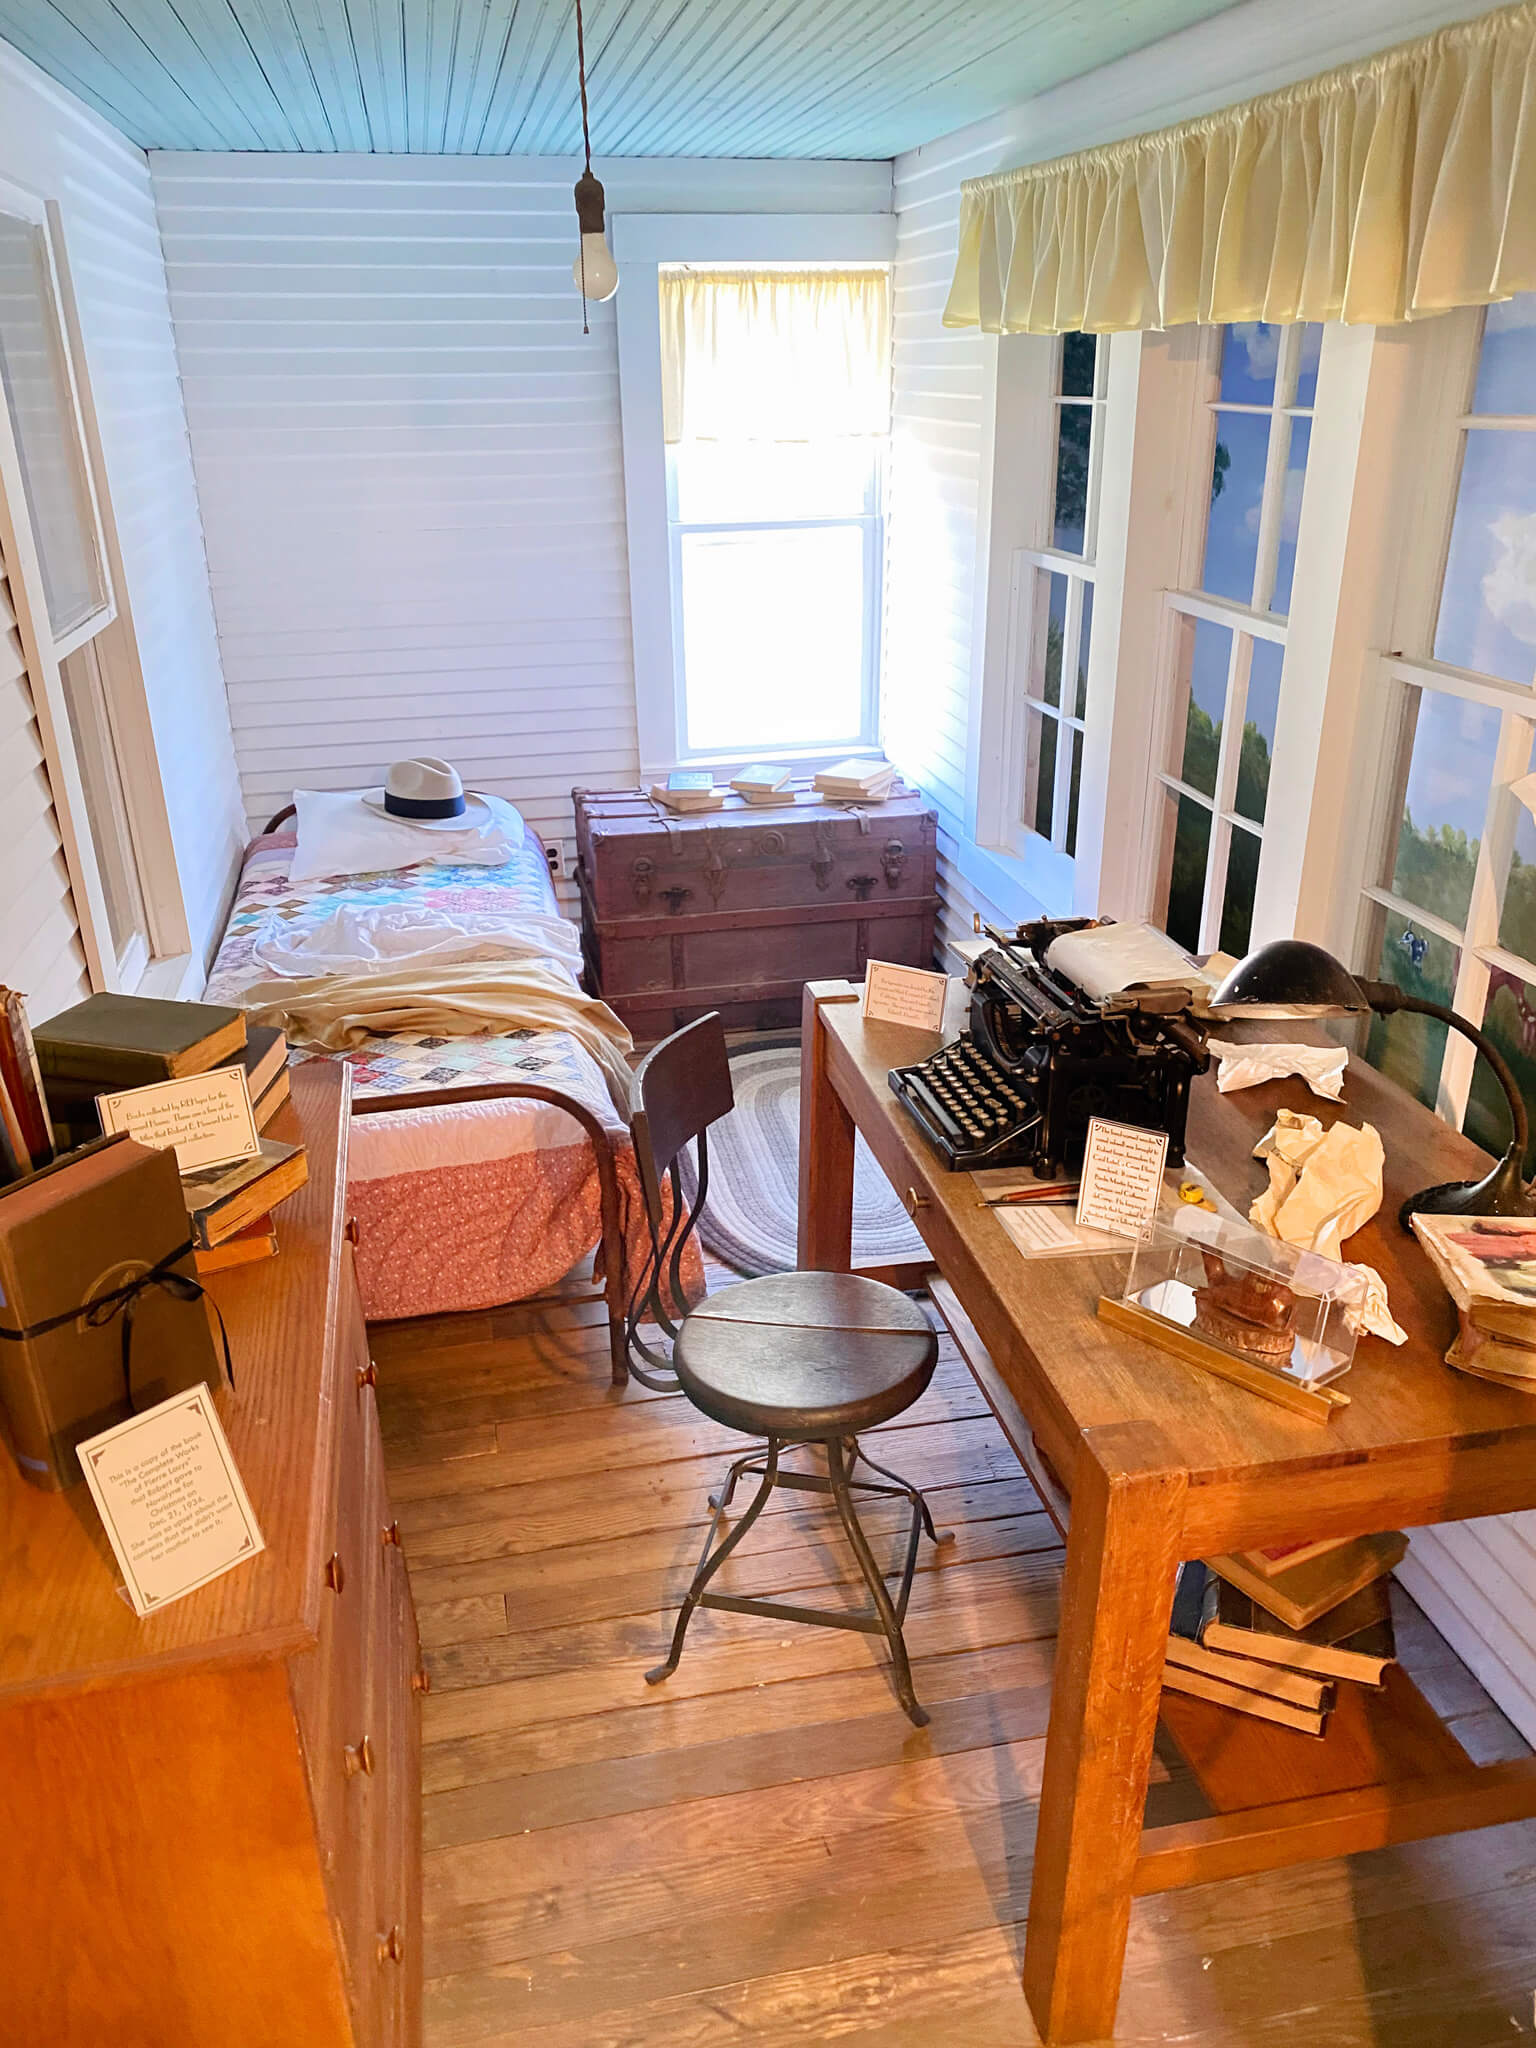 Robert E Howard's Bedroom